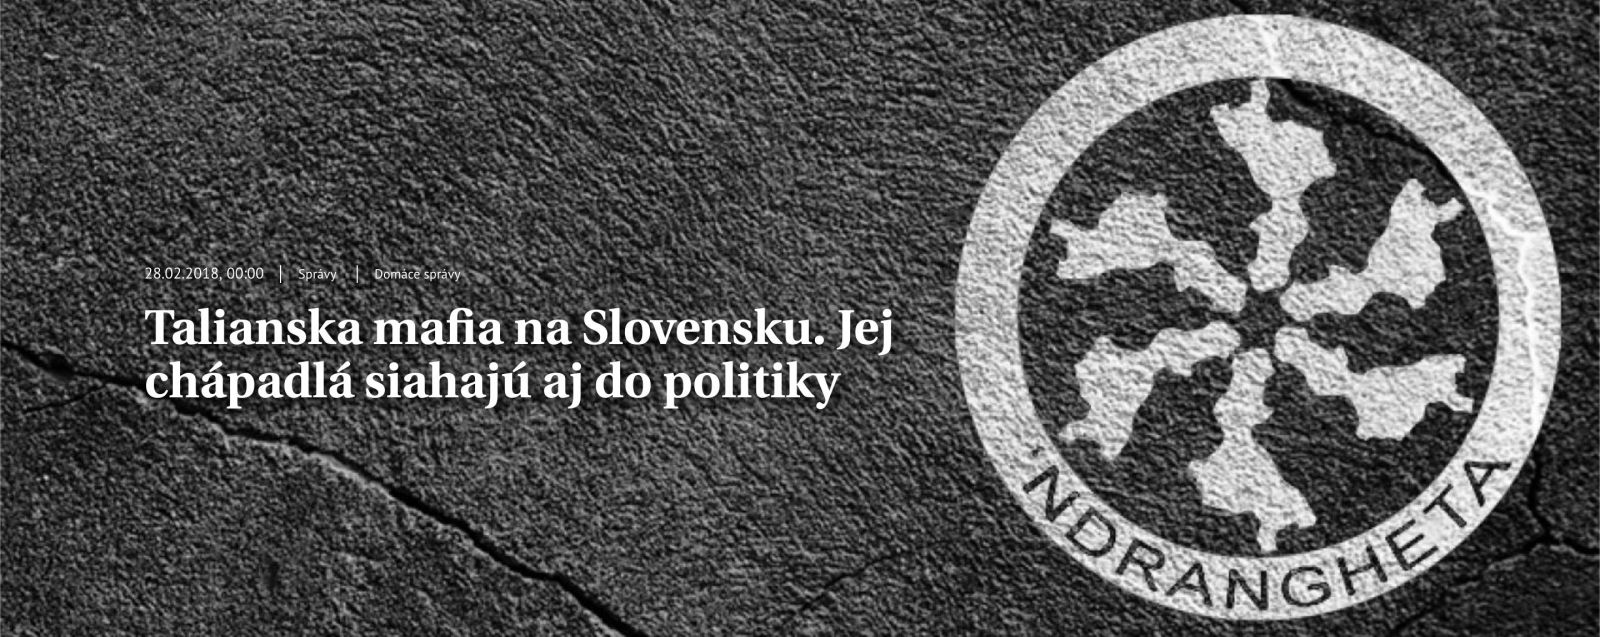 Zavraždený novinár Ján Kuciak získal cenu za najlepší investigatívny článok, ocenený bol aj blog proti fašizmu